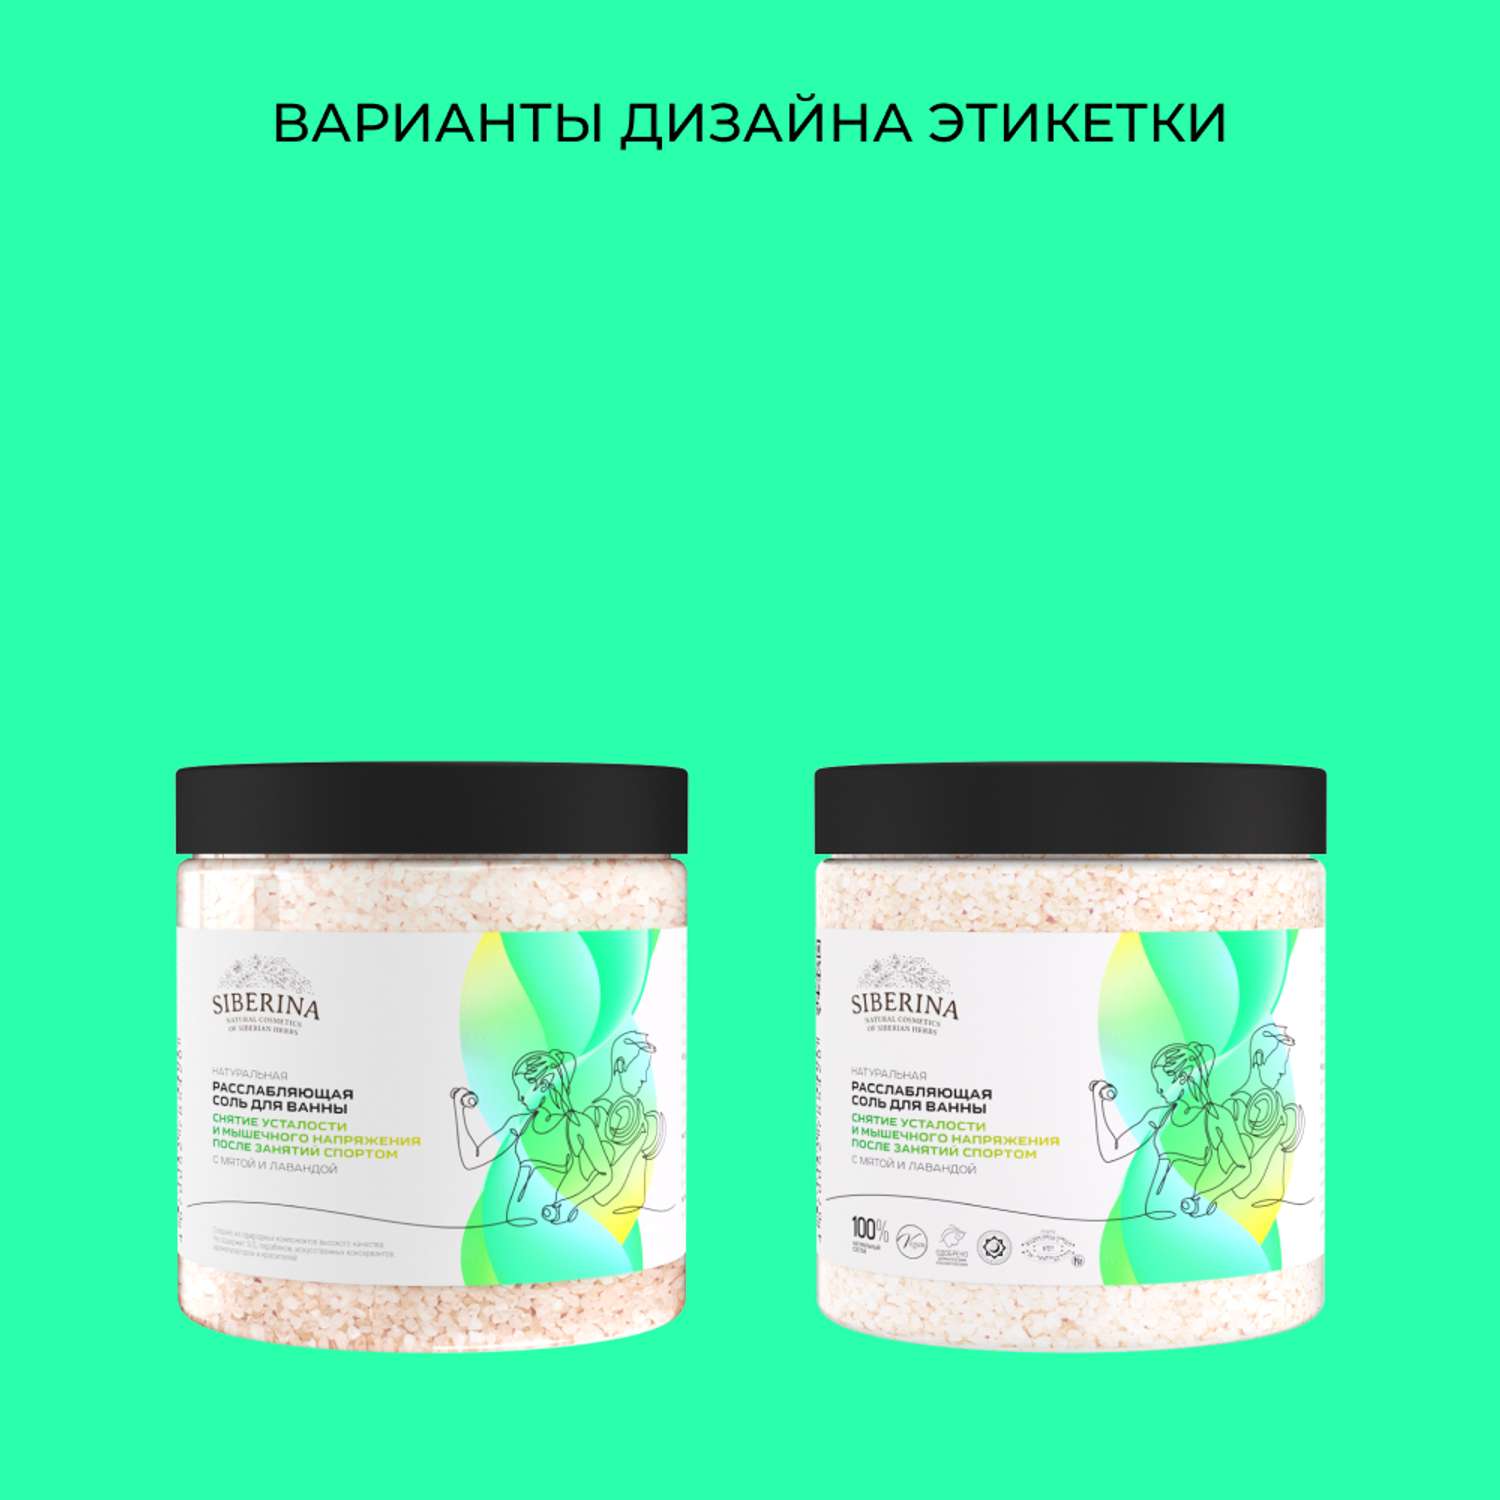 Соль для ванны Siberina натуральная «Снятие усталости и мышечного напряжения» морская расслабляющая 600 г - фото 9